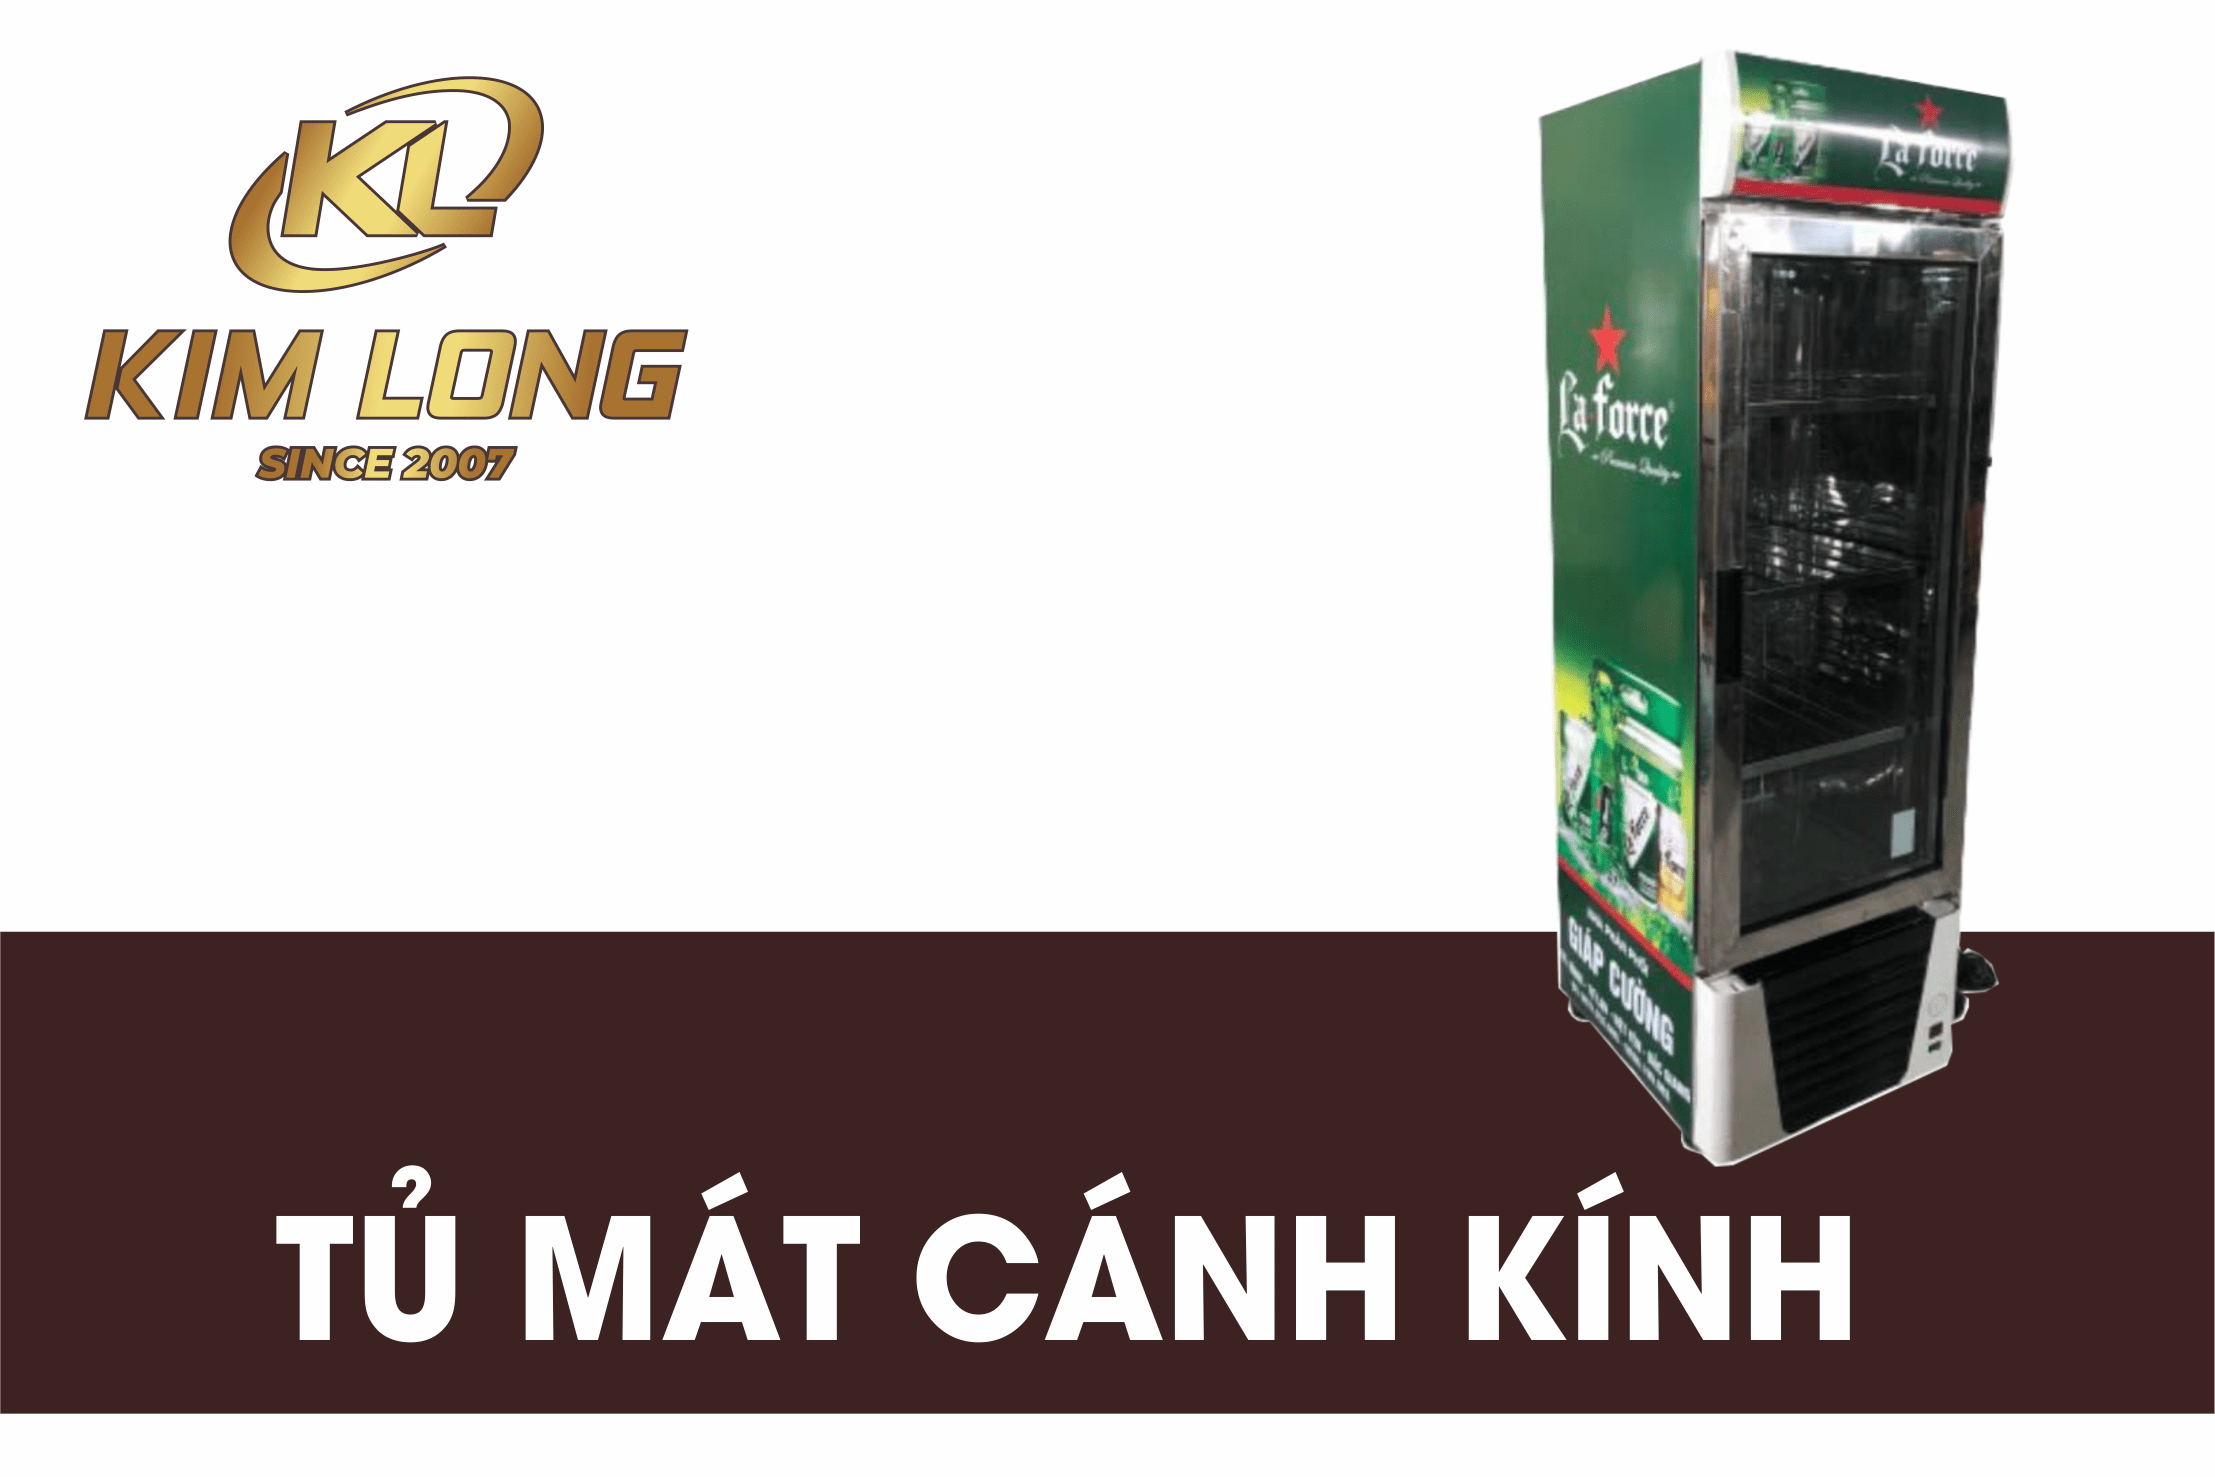 TU MAT CANH KINH 4 250x375